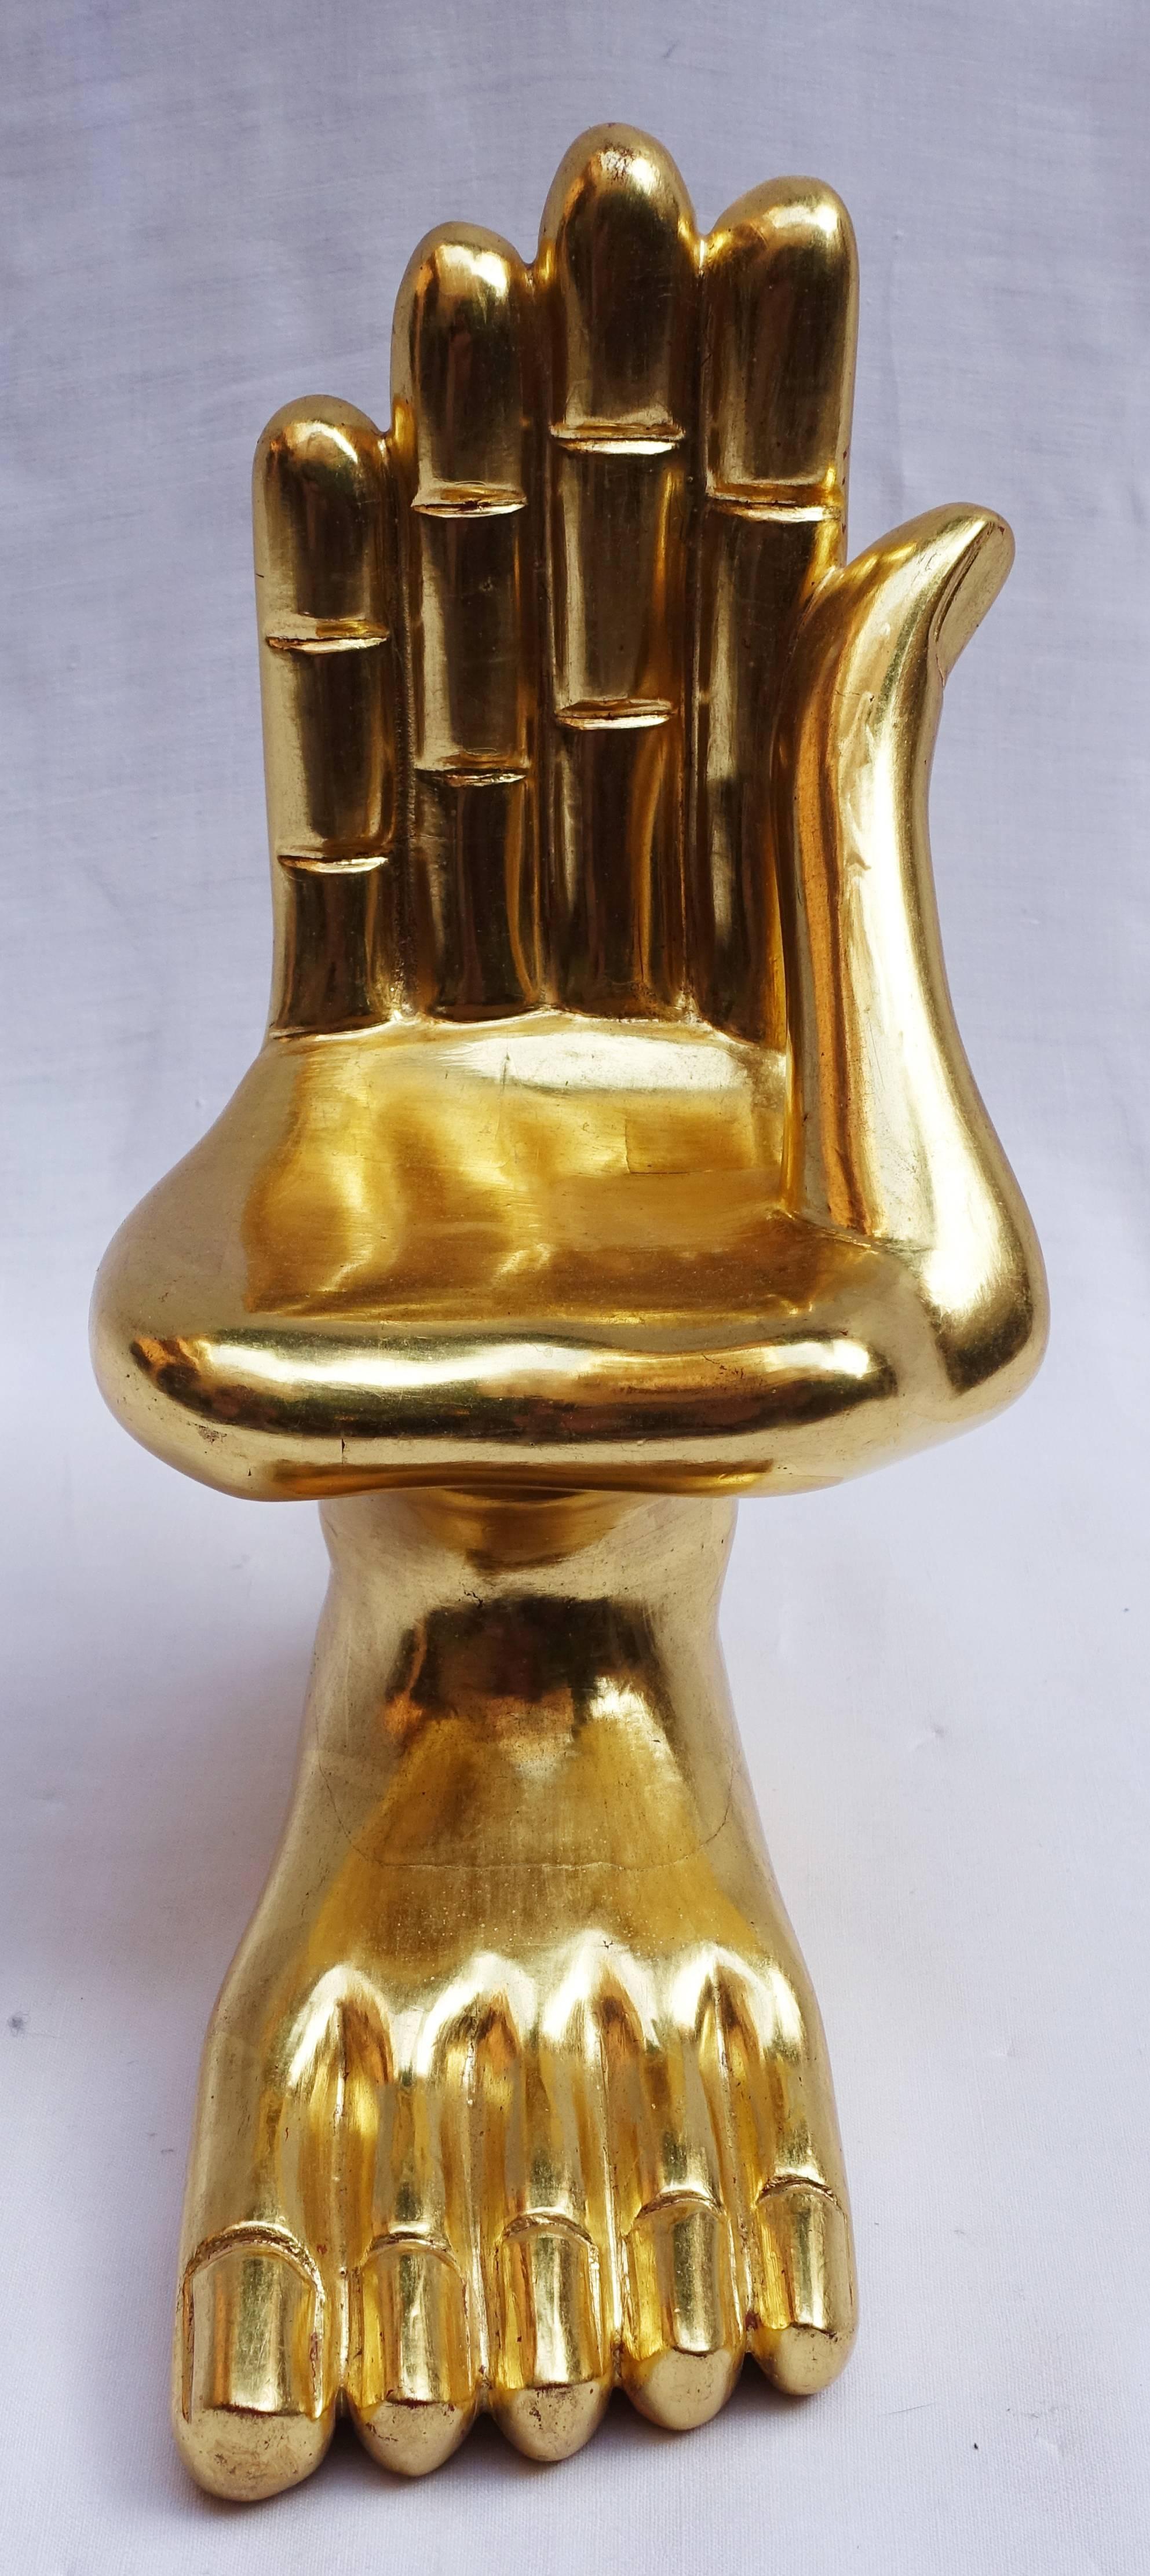 Miniature gold hand sculpture - Sculpture by Pedro Friedeberg